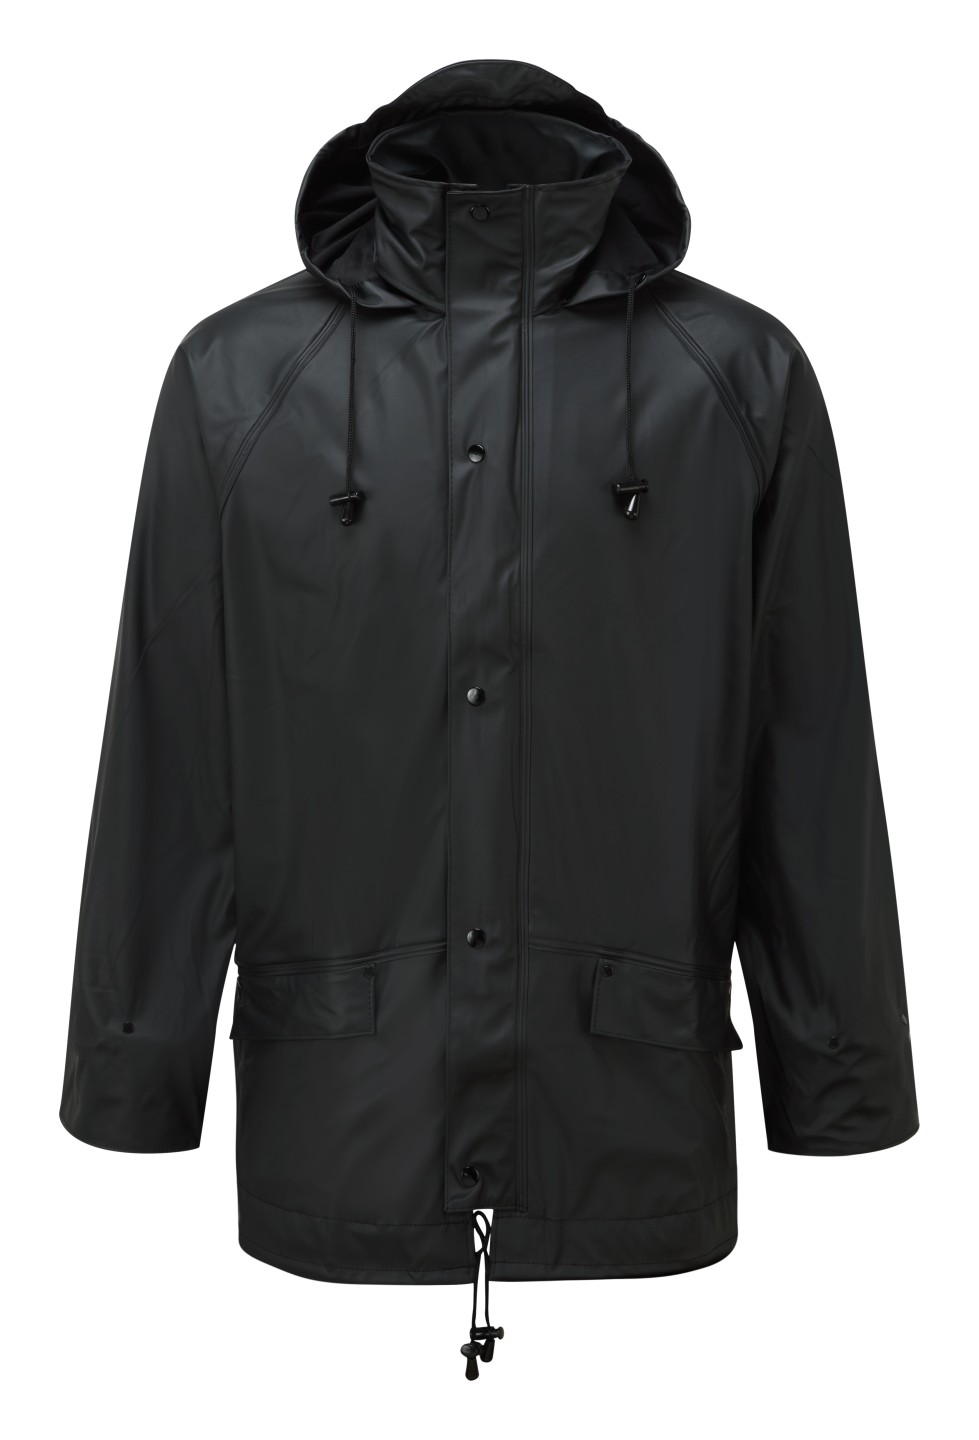 Coats & Jackets - Industrial Workwear